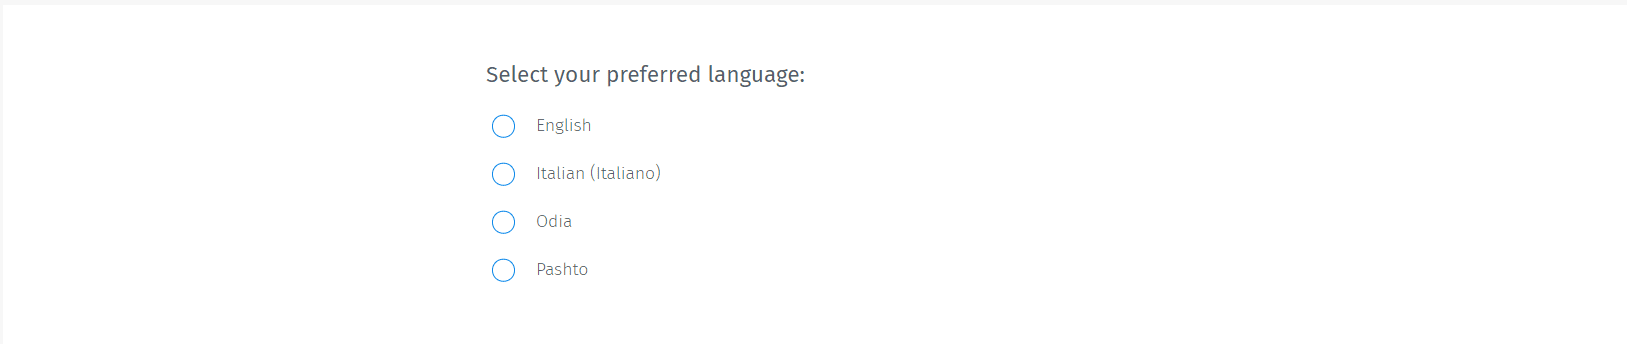 Take-surveys-in-local-languages